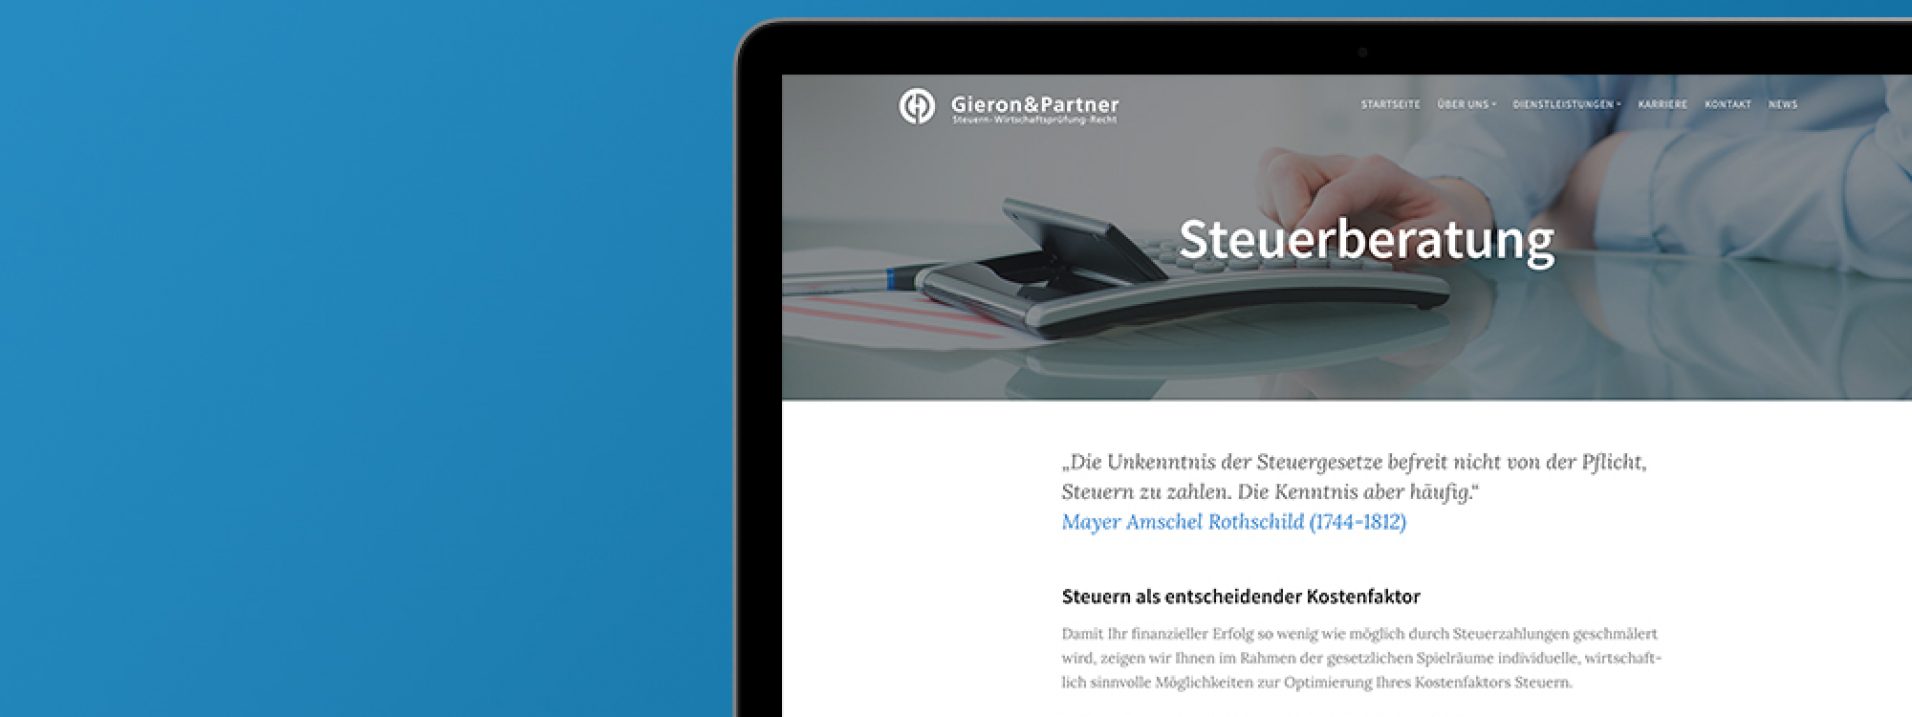 Vorschau des Referenzprojekts „Steuerkanzlei Gieron & Partner“ der Berliner Werbeagentur und Internetagentur Dive Designs